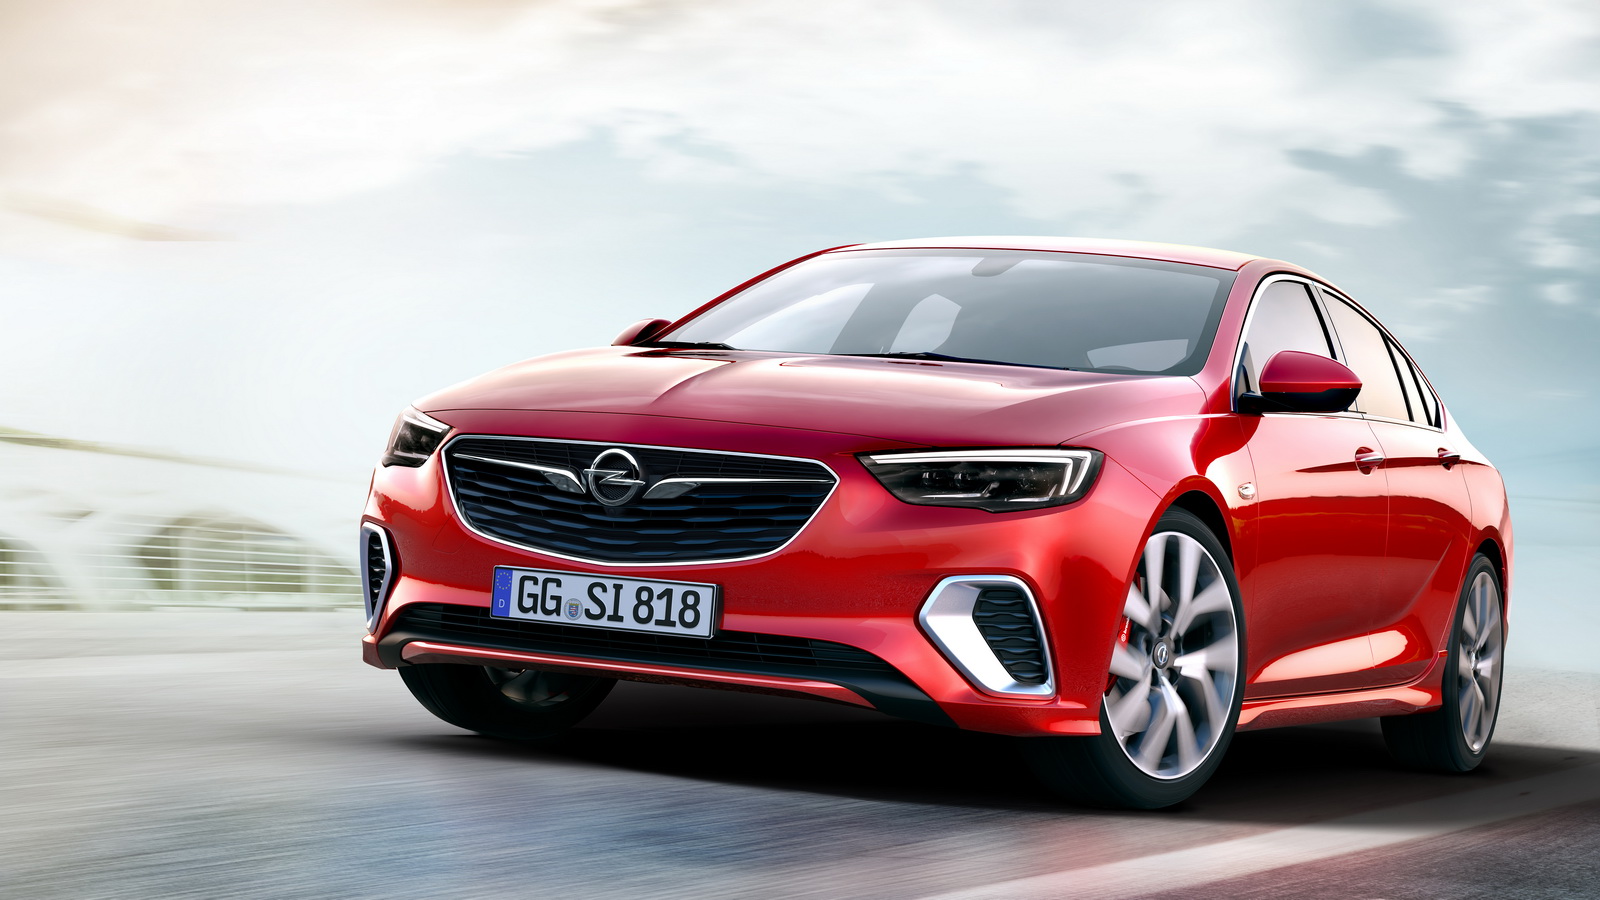  Yeni Opel Insignia GSi resim galerisi